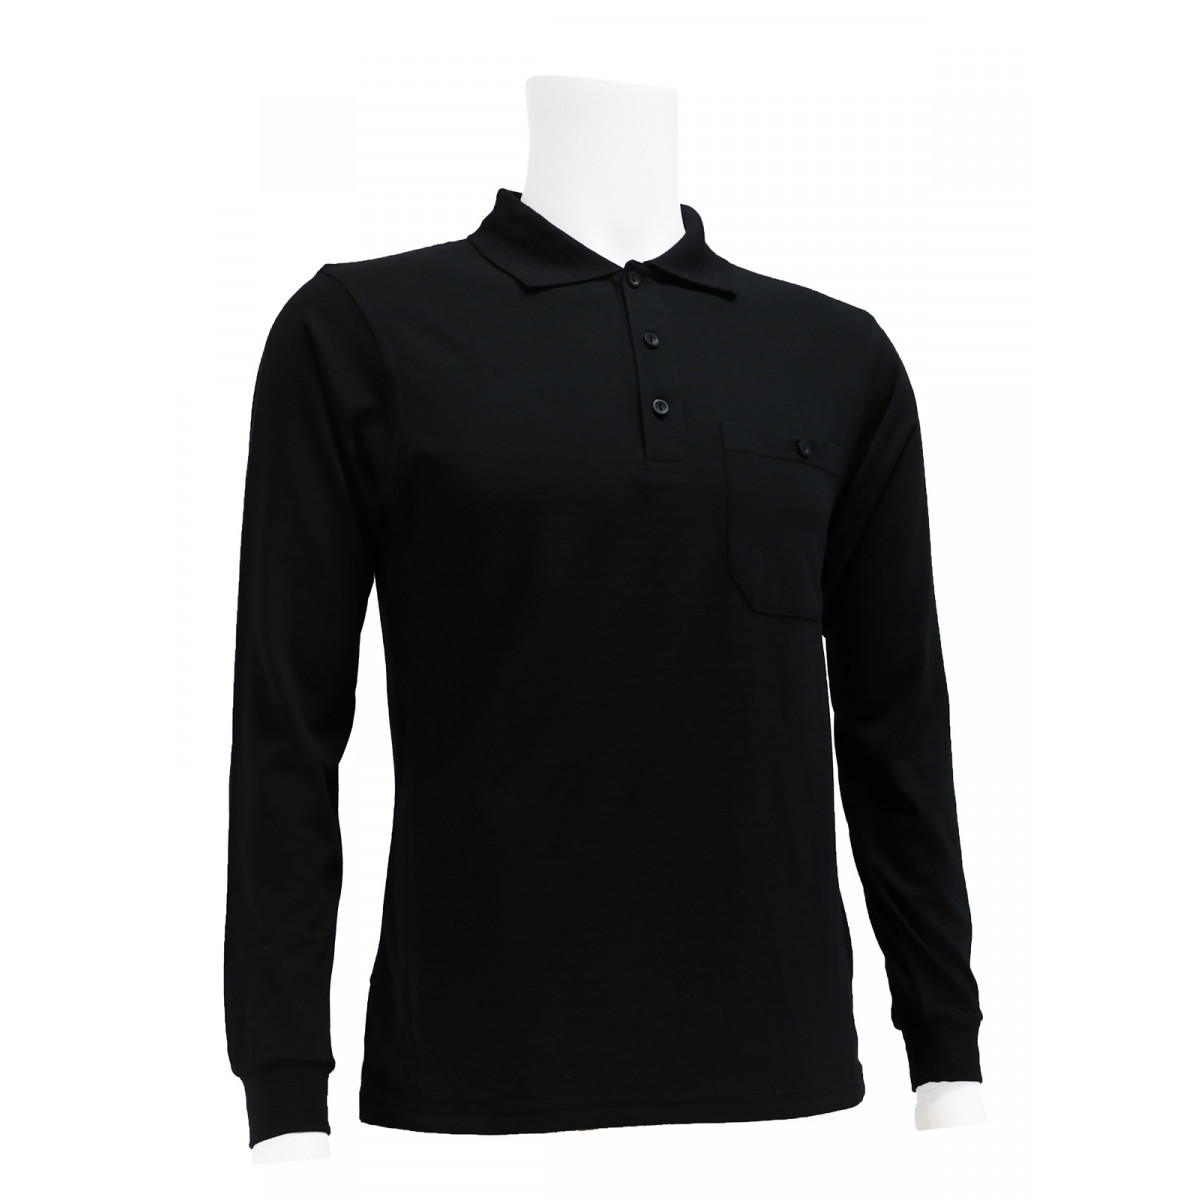 KETEX® polo shirt, long sleeve